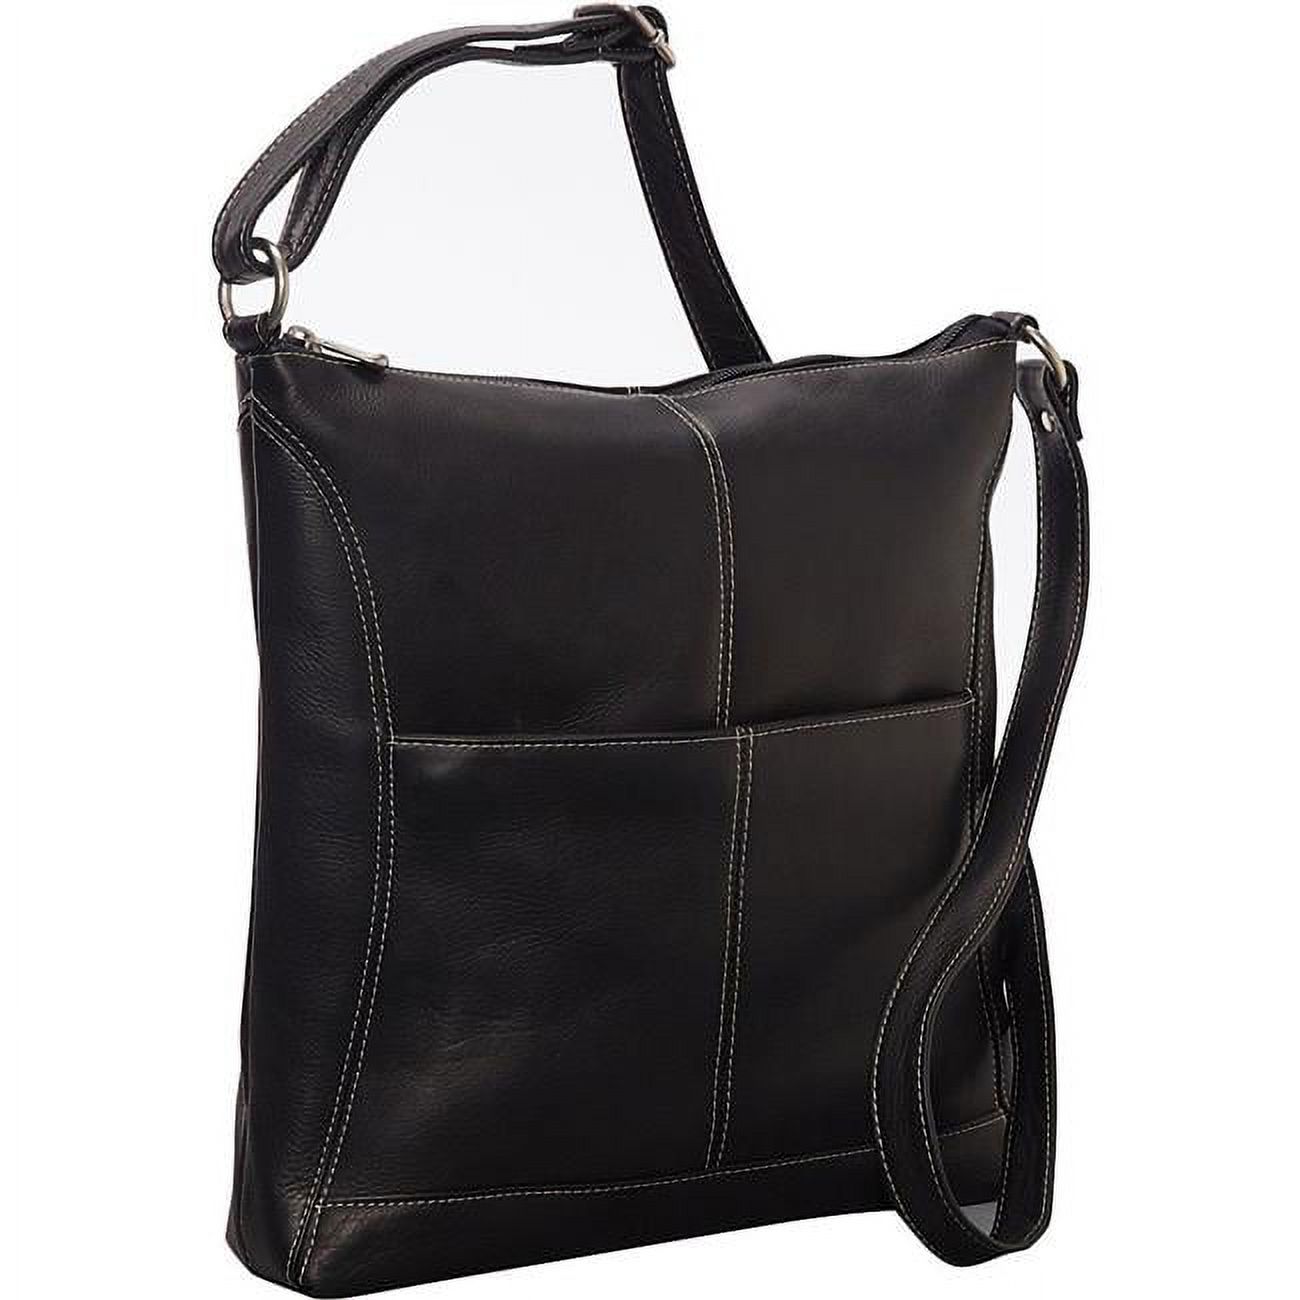 Le Donne Leather Easy Slip Crossbody Shoulder Bag LD-7052 - image 1 of 5